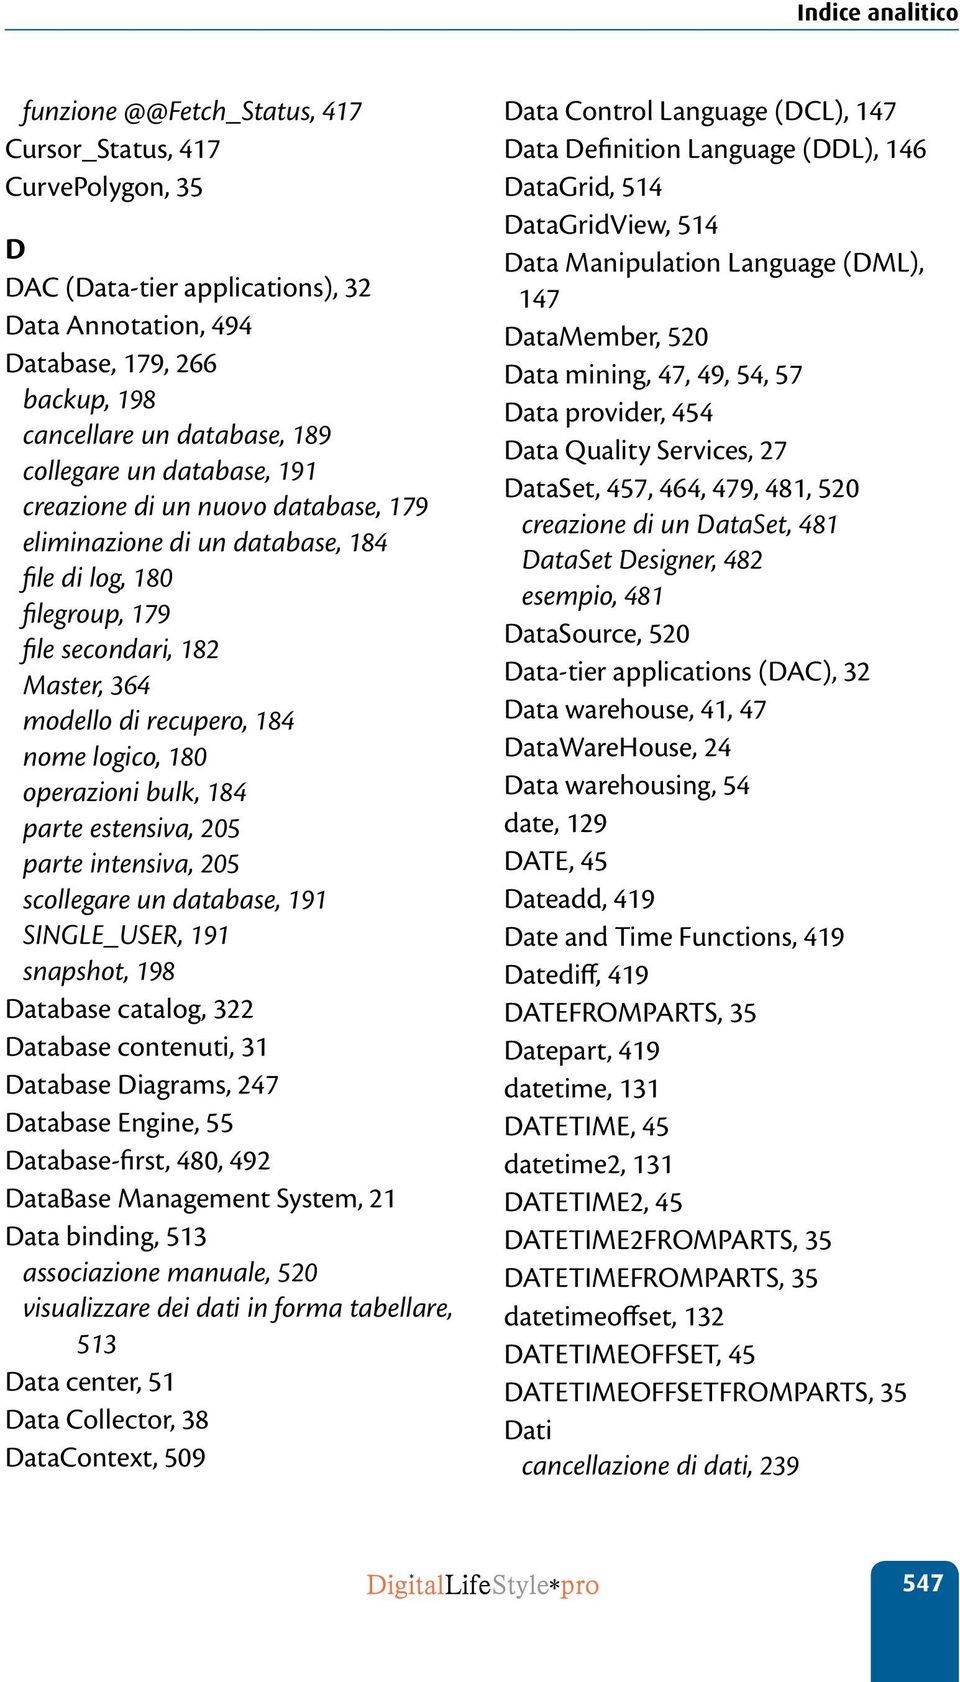 bulk, 184 parte estensiva, 205 parte intensiva, 205 scollegare un database, 191 SINGLE_USER, 191 snapshot, 198 Database catalog, 322 Database contenuti, 31 Database Diagrams, 247 Database Engine, 55